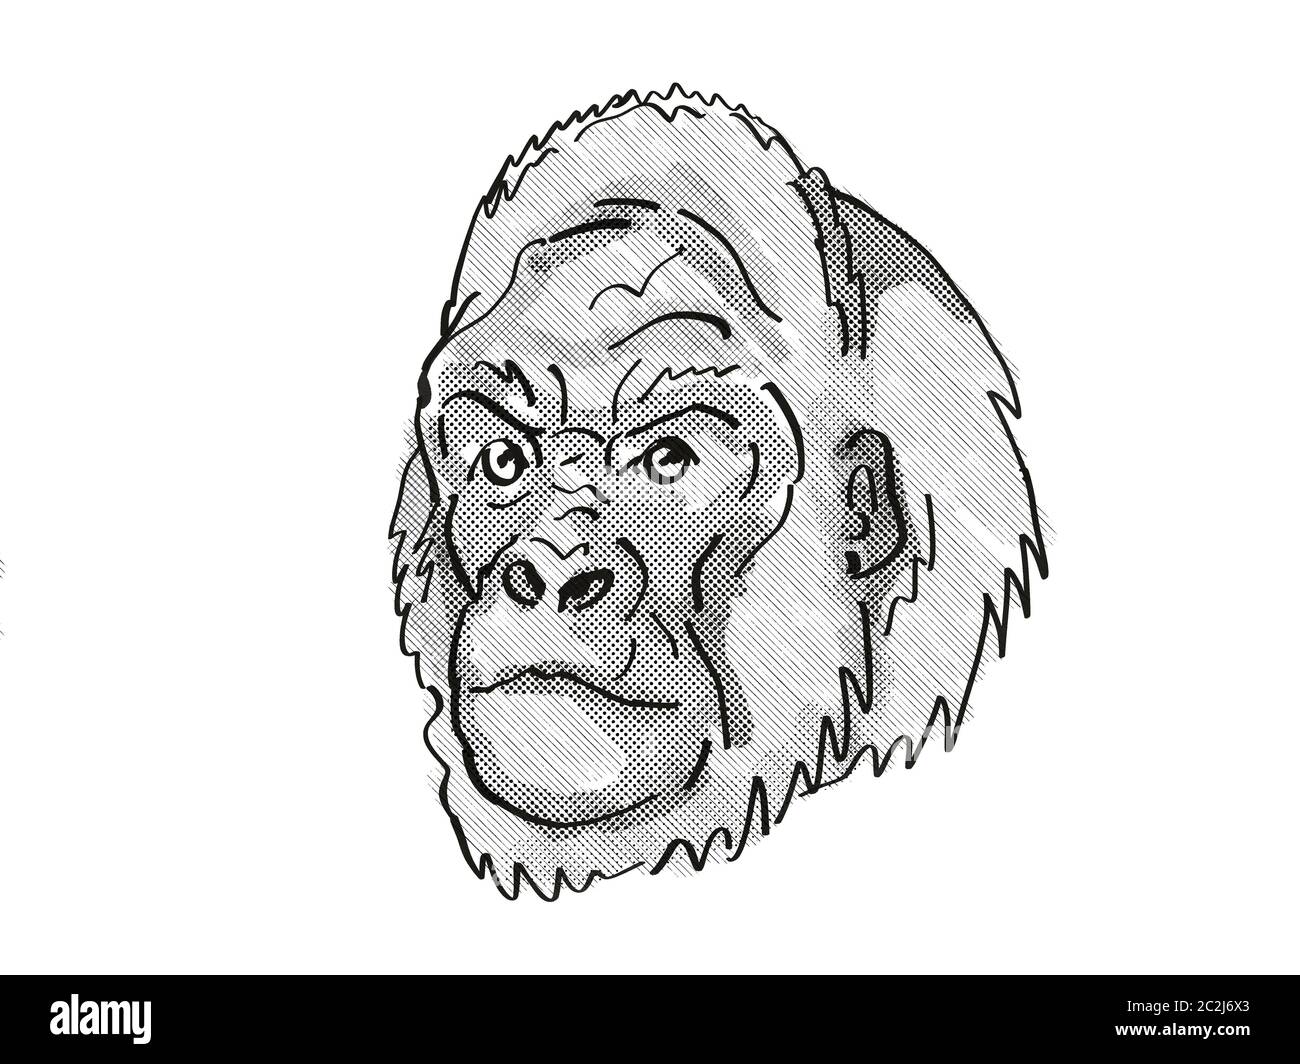 Retro cartoon style dessin de tête d'un gorille de plaine de l'Ouest, une espèce d'espèces isolées sur fond blanc en noir et blanc. Banque D'Images